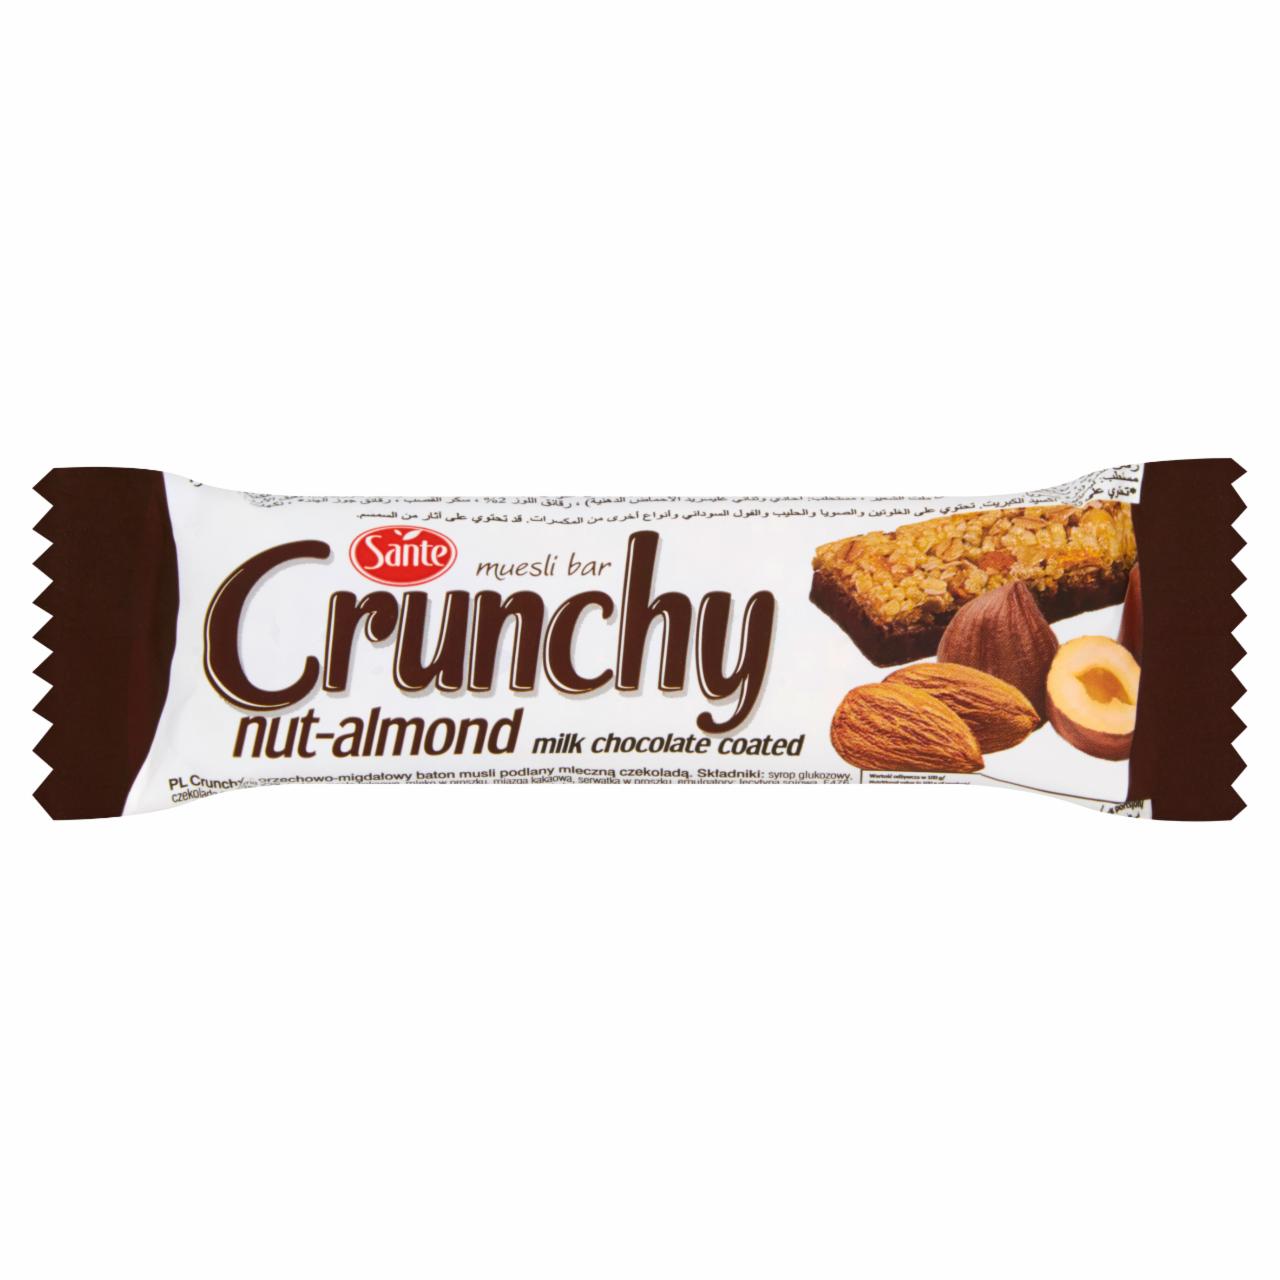 Zdjęcia - Sante Crunchy Orzechowo-migdałowy baton musli podlany czekoladą 35 g